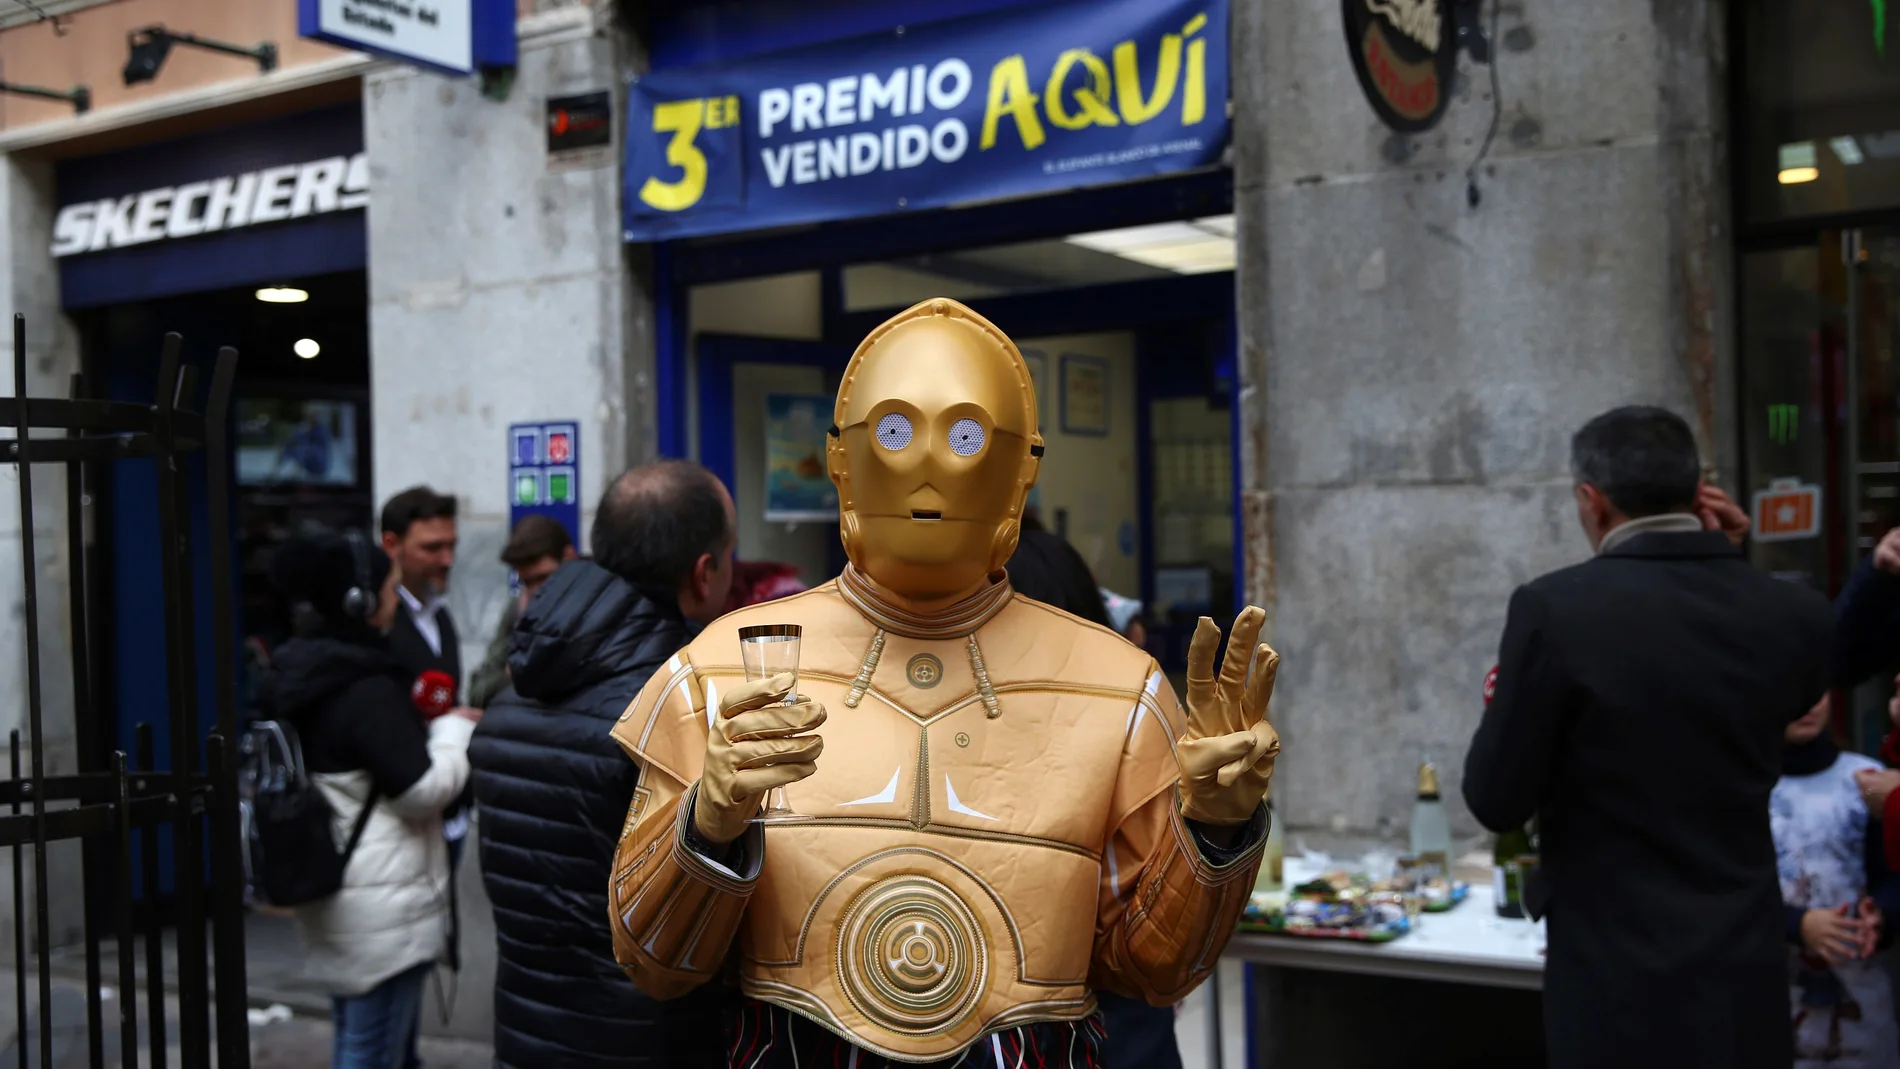 Una persona disfrazada del robot de la Guerra de las Galaxias C-3PO celebra en la administración de lotería 150 en la calle Arenal de Madrid donde se ha vendido una serie del tercer premio del Sorteo Extraordinario de Navidad, el número 00750.